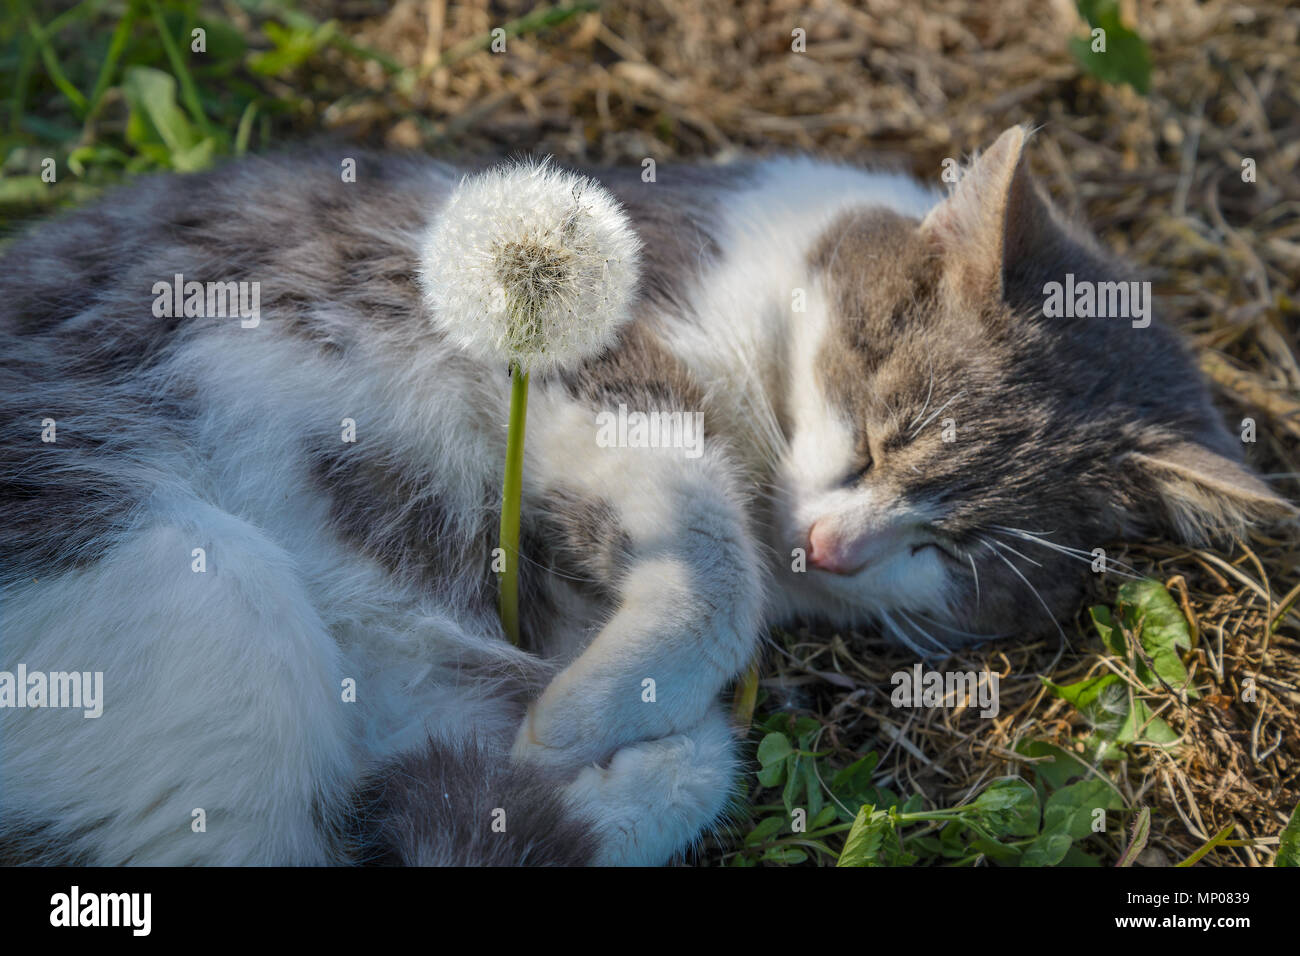 El gato gris duerme abrazando un diente de león Foto de stock